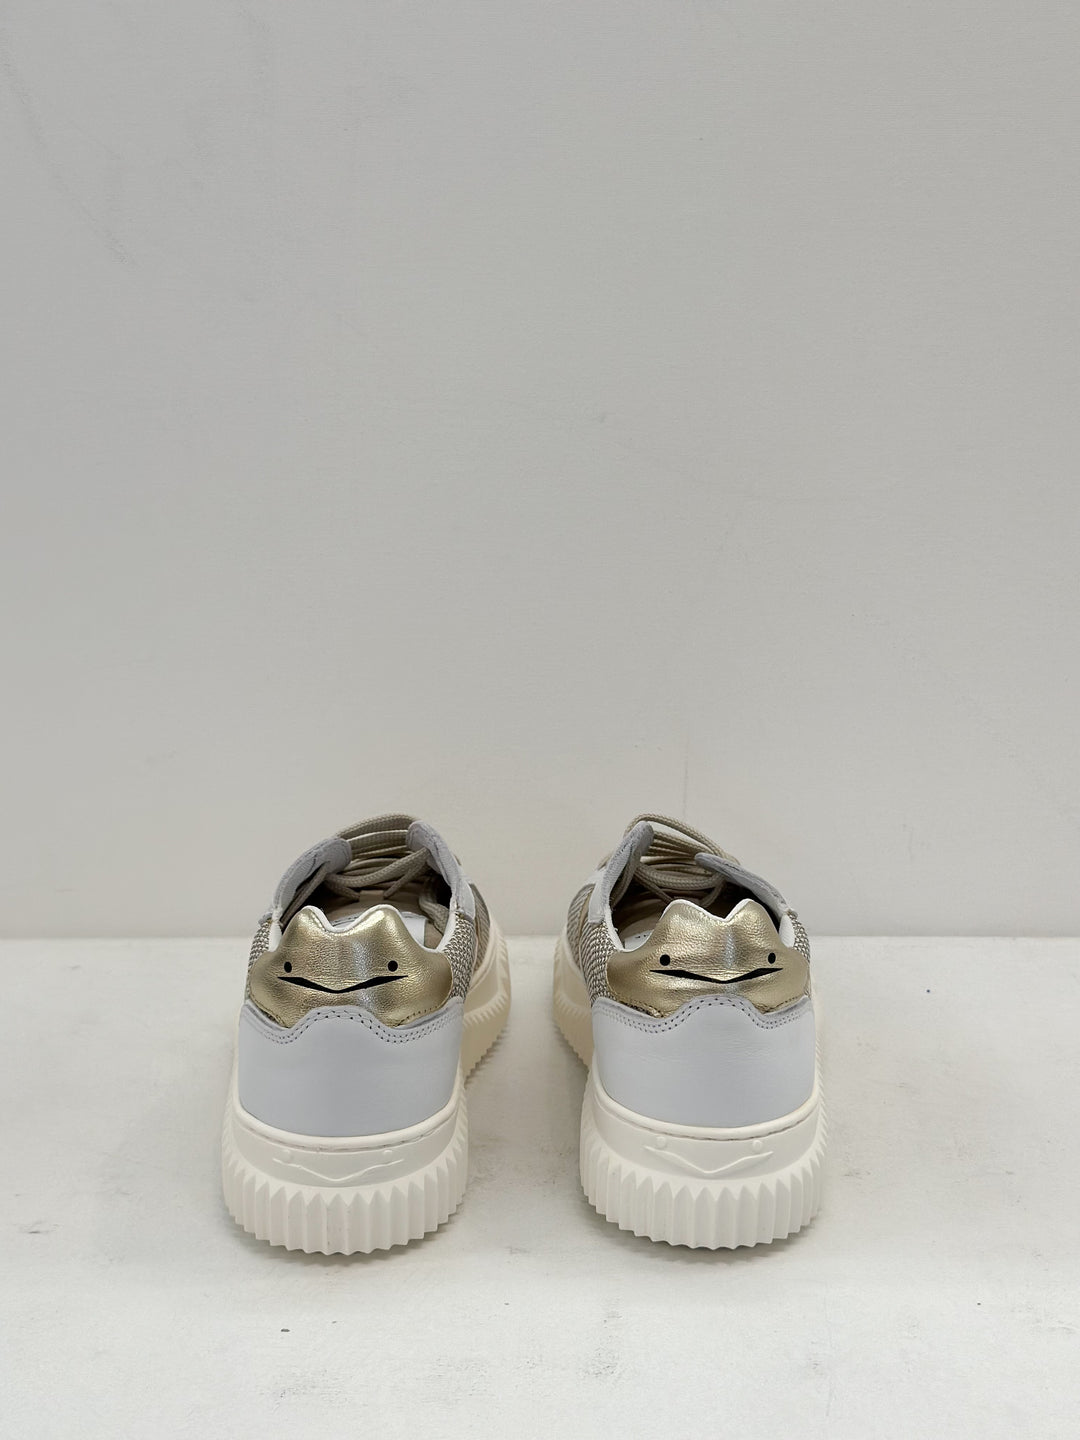 Voile Blanche - Lipari Sneaker in Sand White